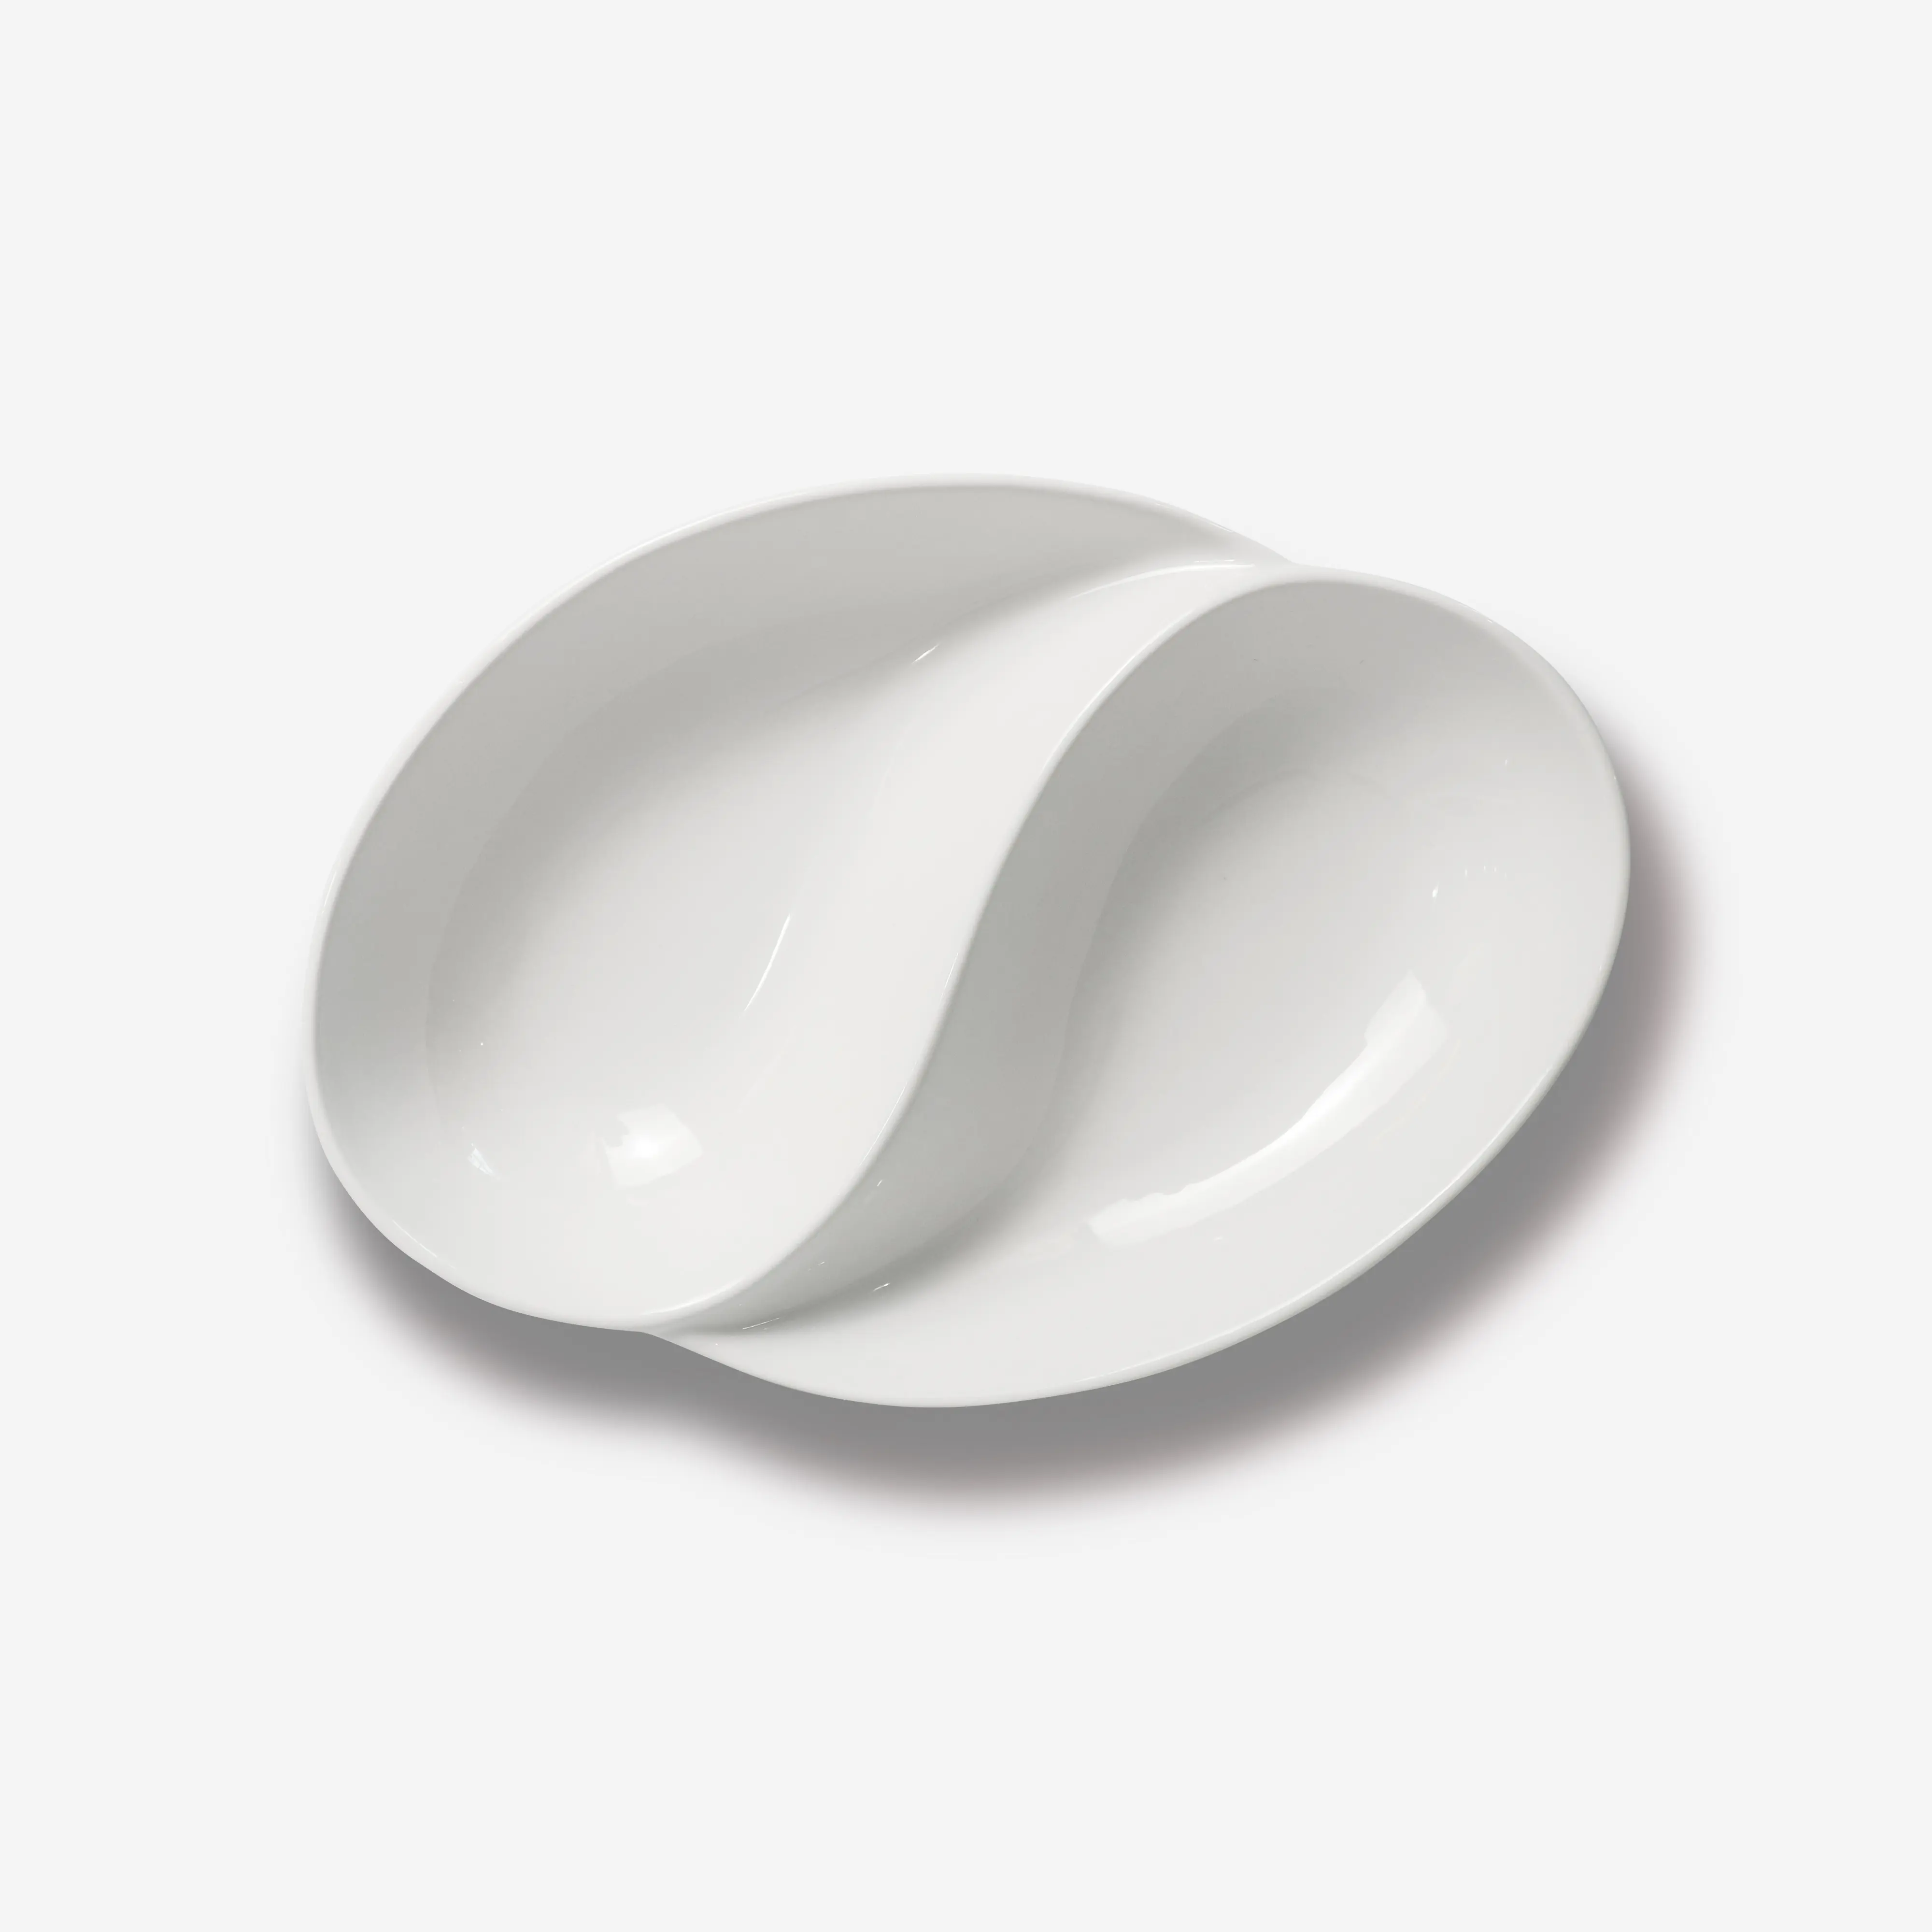 Jinbaichuan Mode Vaatwasser Magnetron Veilige Keramische Plaat 2 Compartimenten Witte Porseleinen Dessertplaat